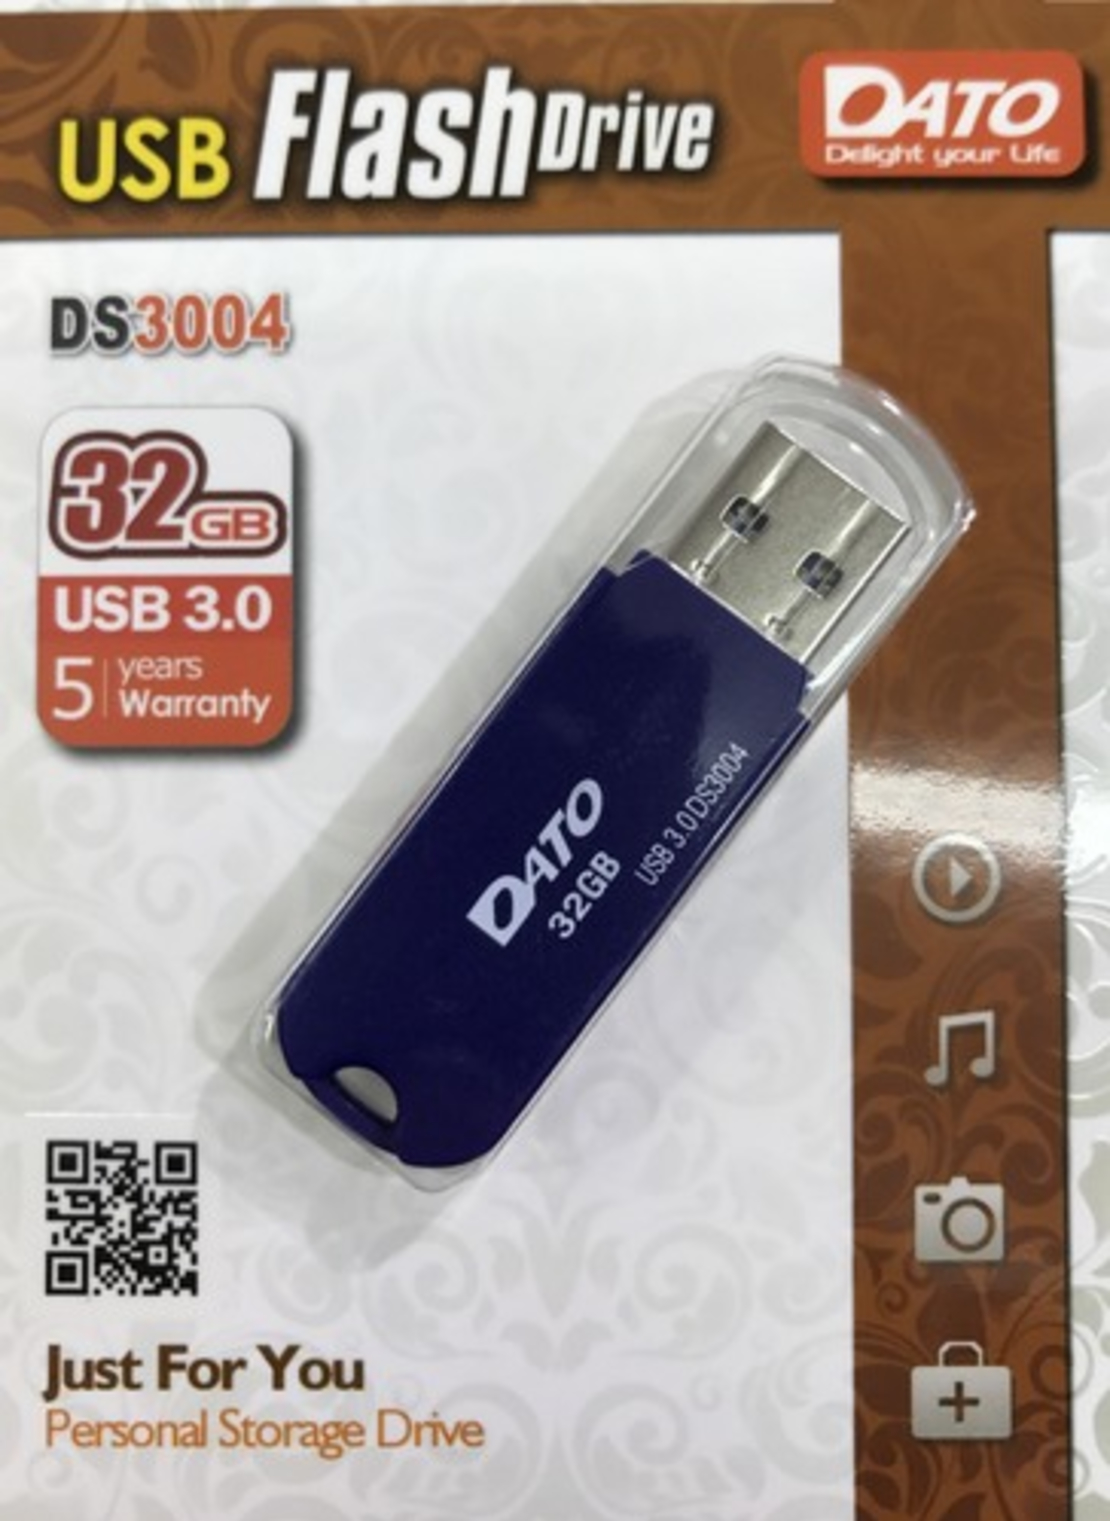 דיסק און קי DATO USB 3.0 32GB DS3004